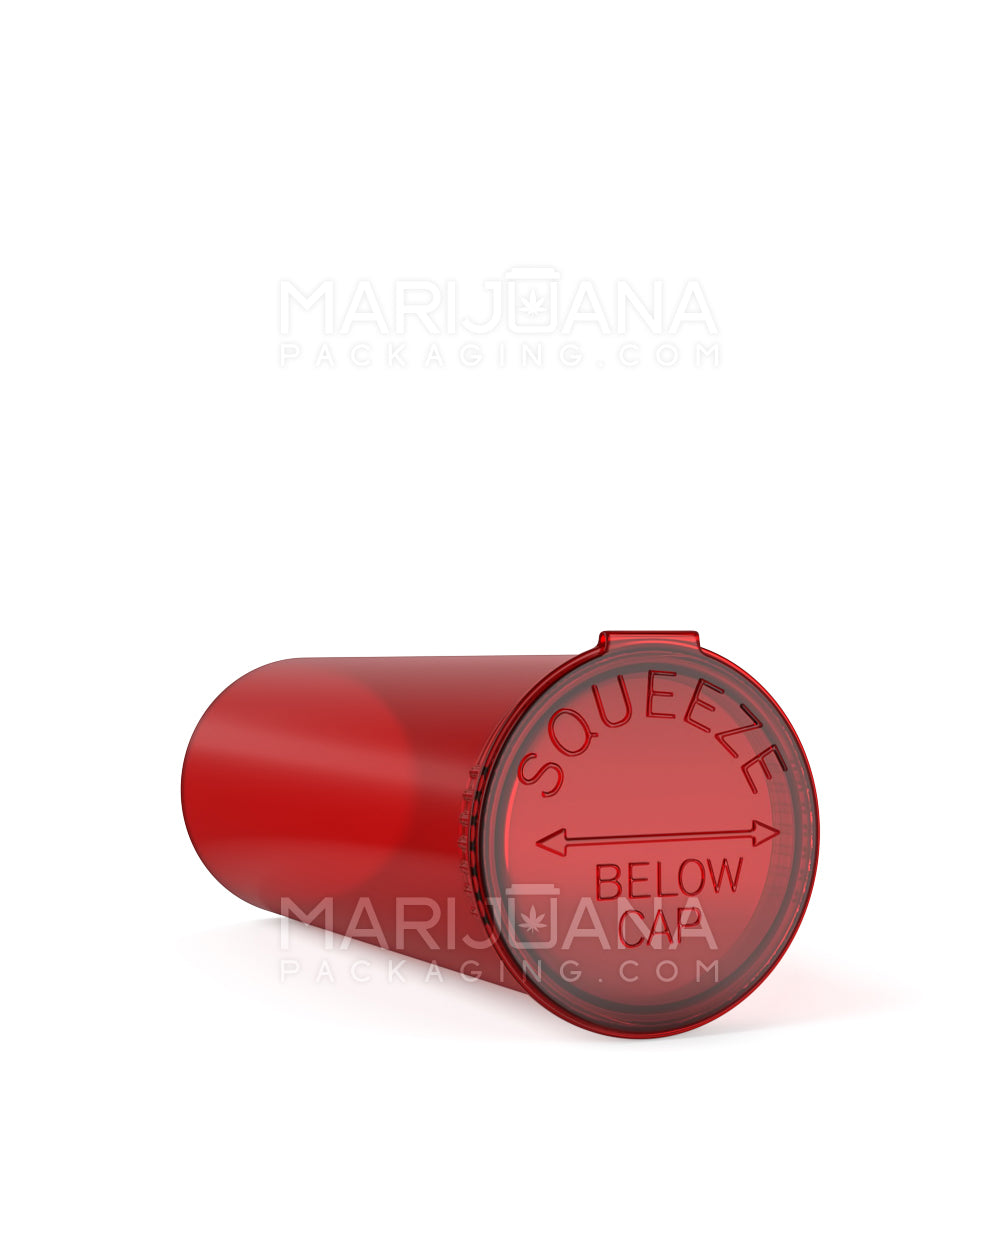 Child Resistant | Transparent Red Pop Top Bottles | 60dr - 14g - 75 Count - 3